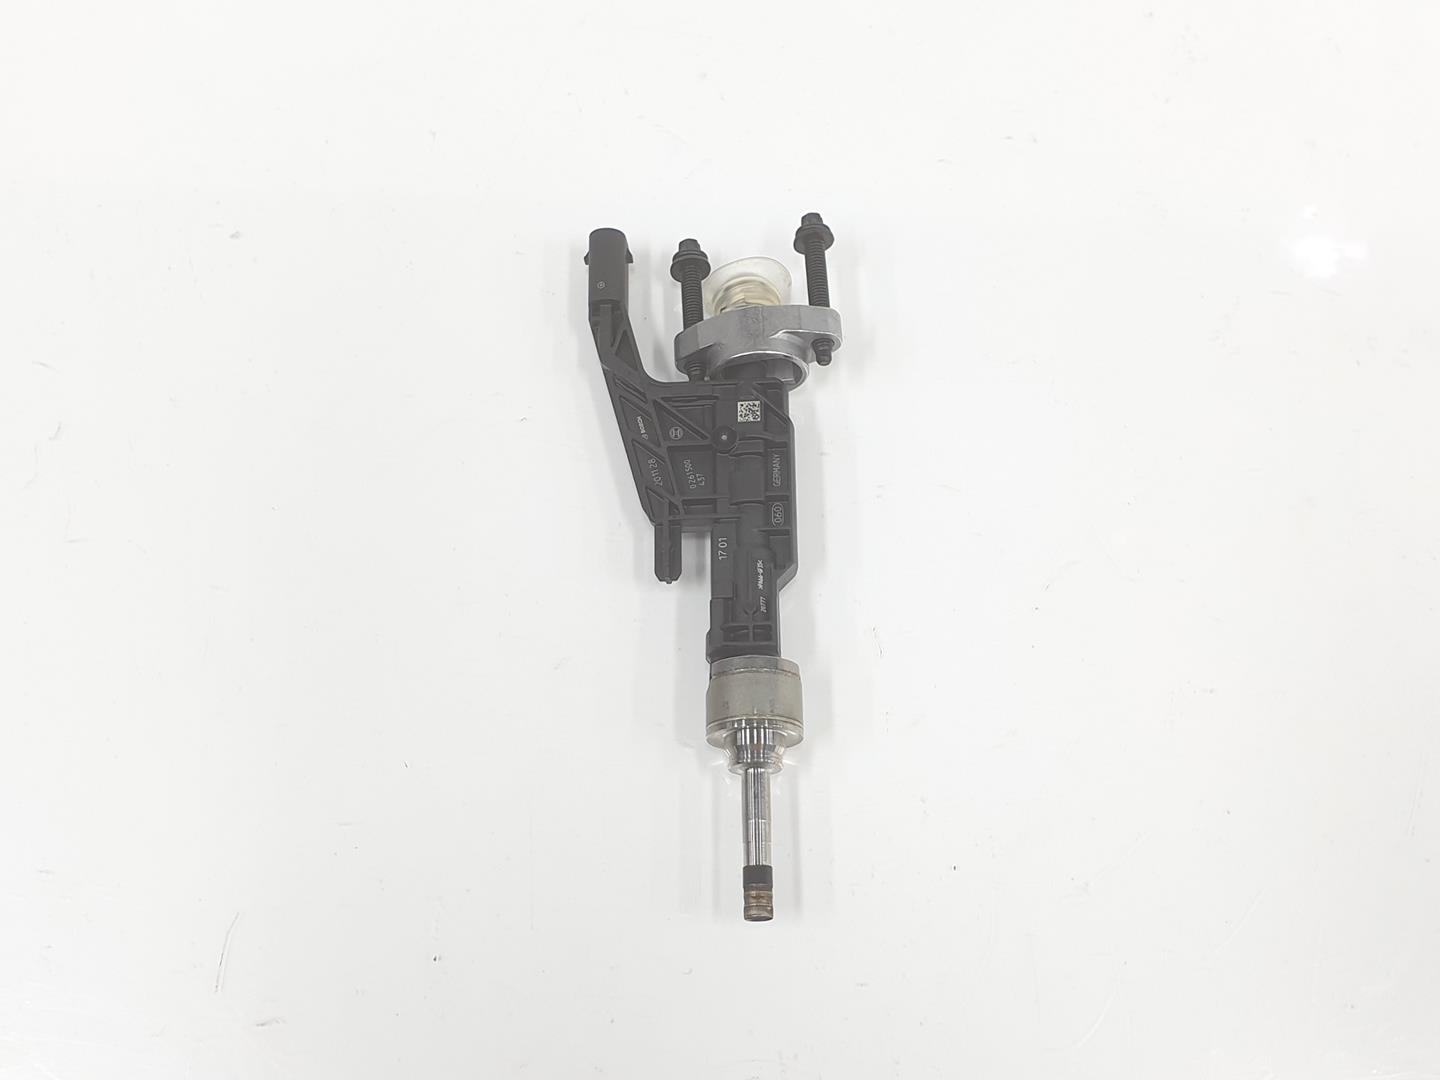 MINI Cooper R56 (2006-2015) Fuel Injector 13538656548, 0261500437, 1212CD2222DL 19833558